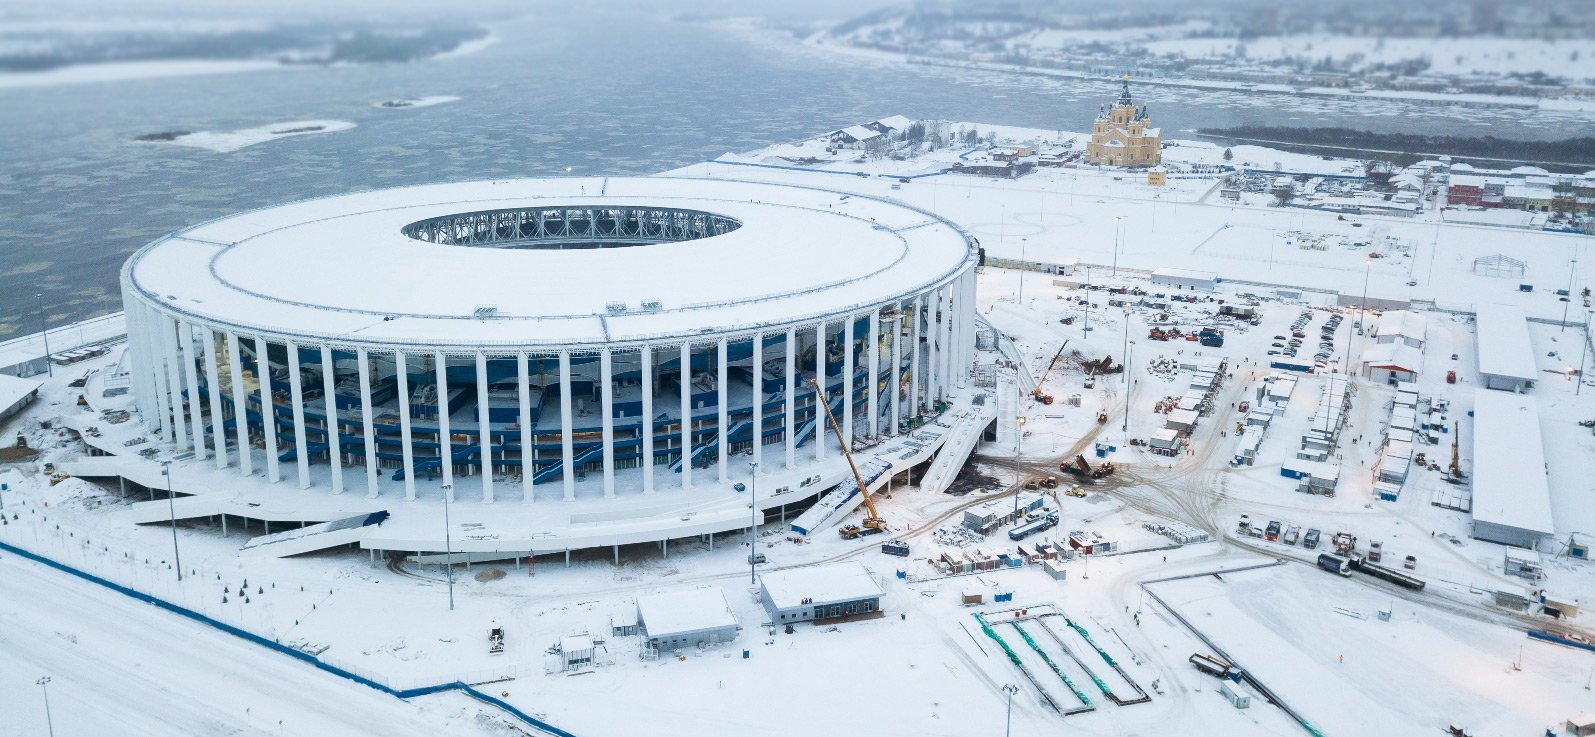 Stadion Nizhny Novgorod